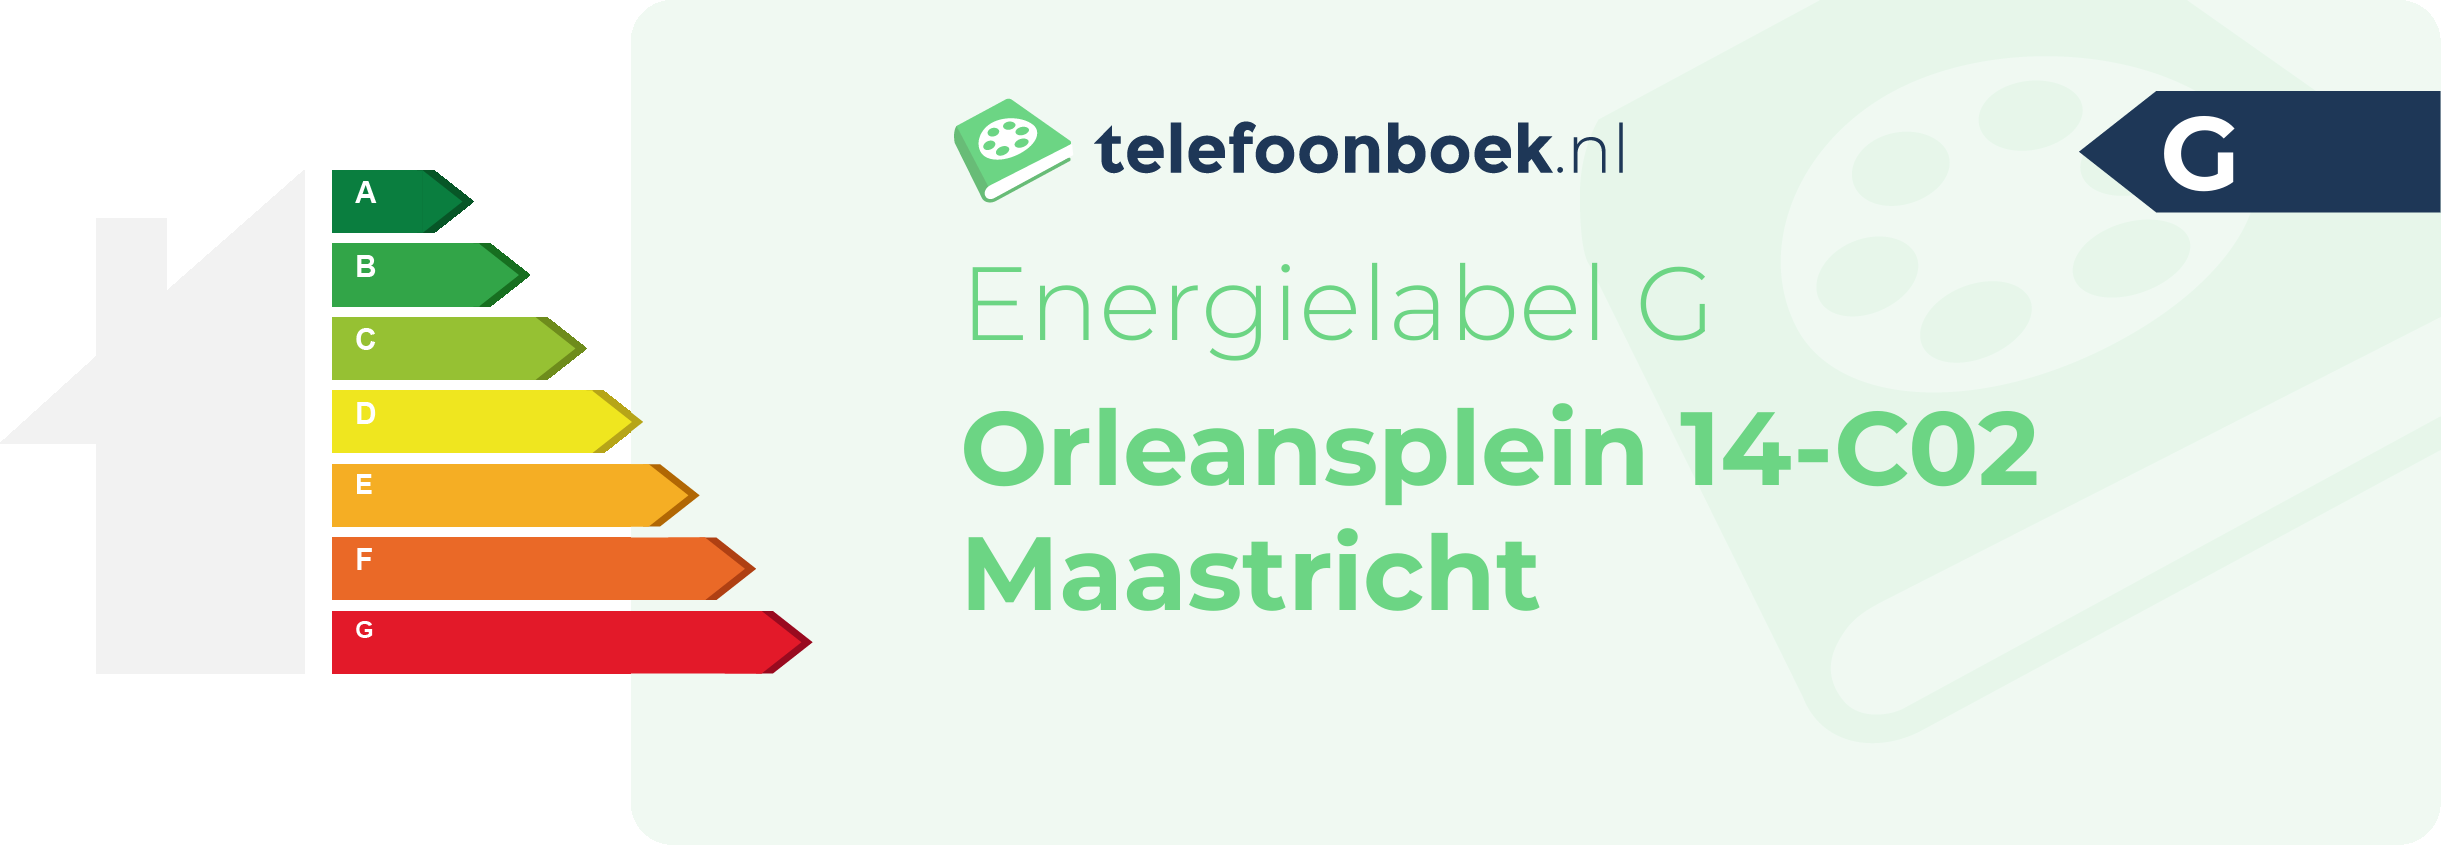 Energielabel Orleansplein 14-C02 Maastricht